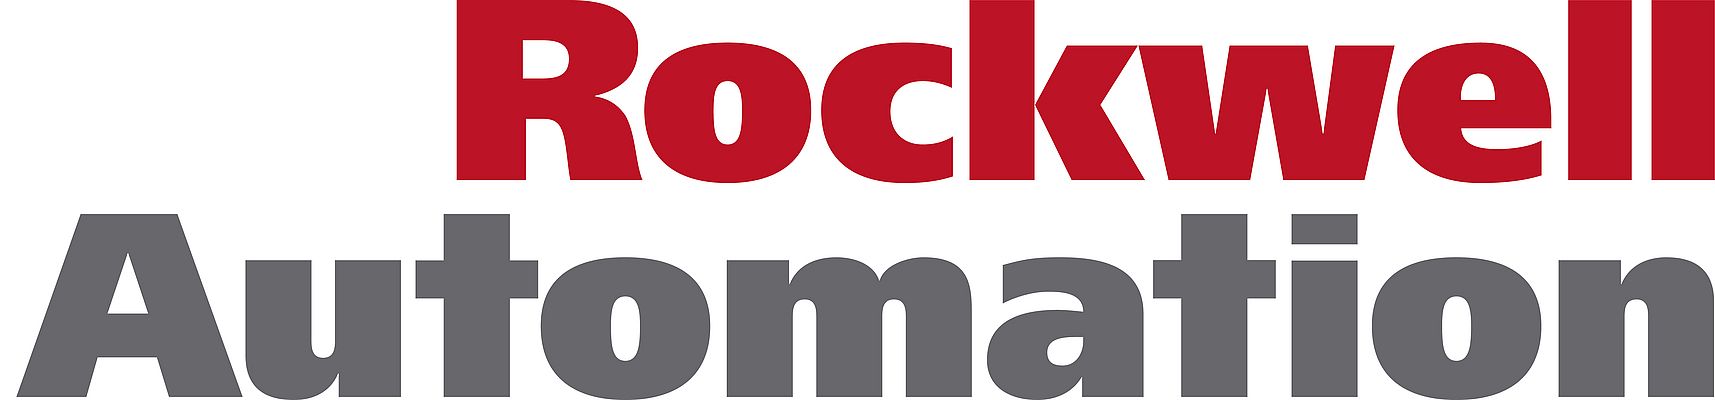 Rockwell Automation gibt Zahlen für das erste Quartal 2012 bekannt